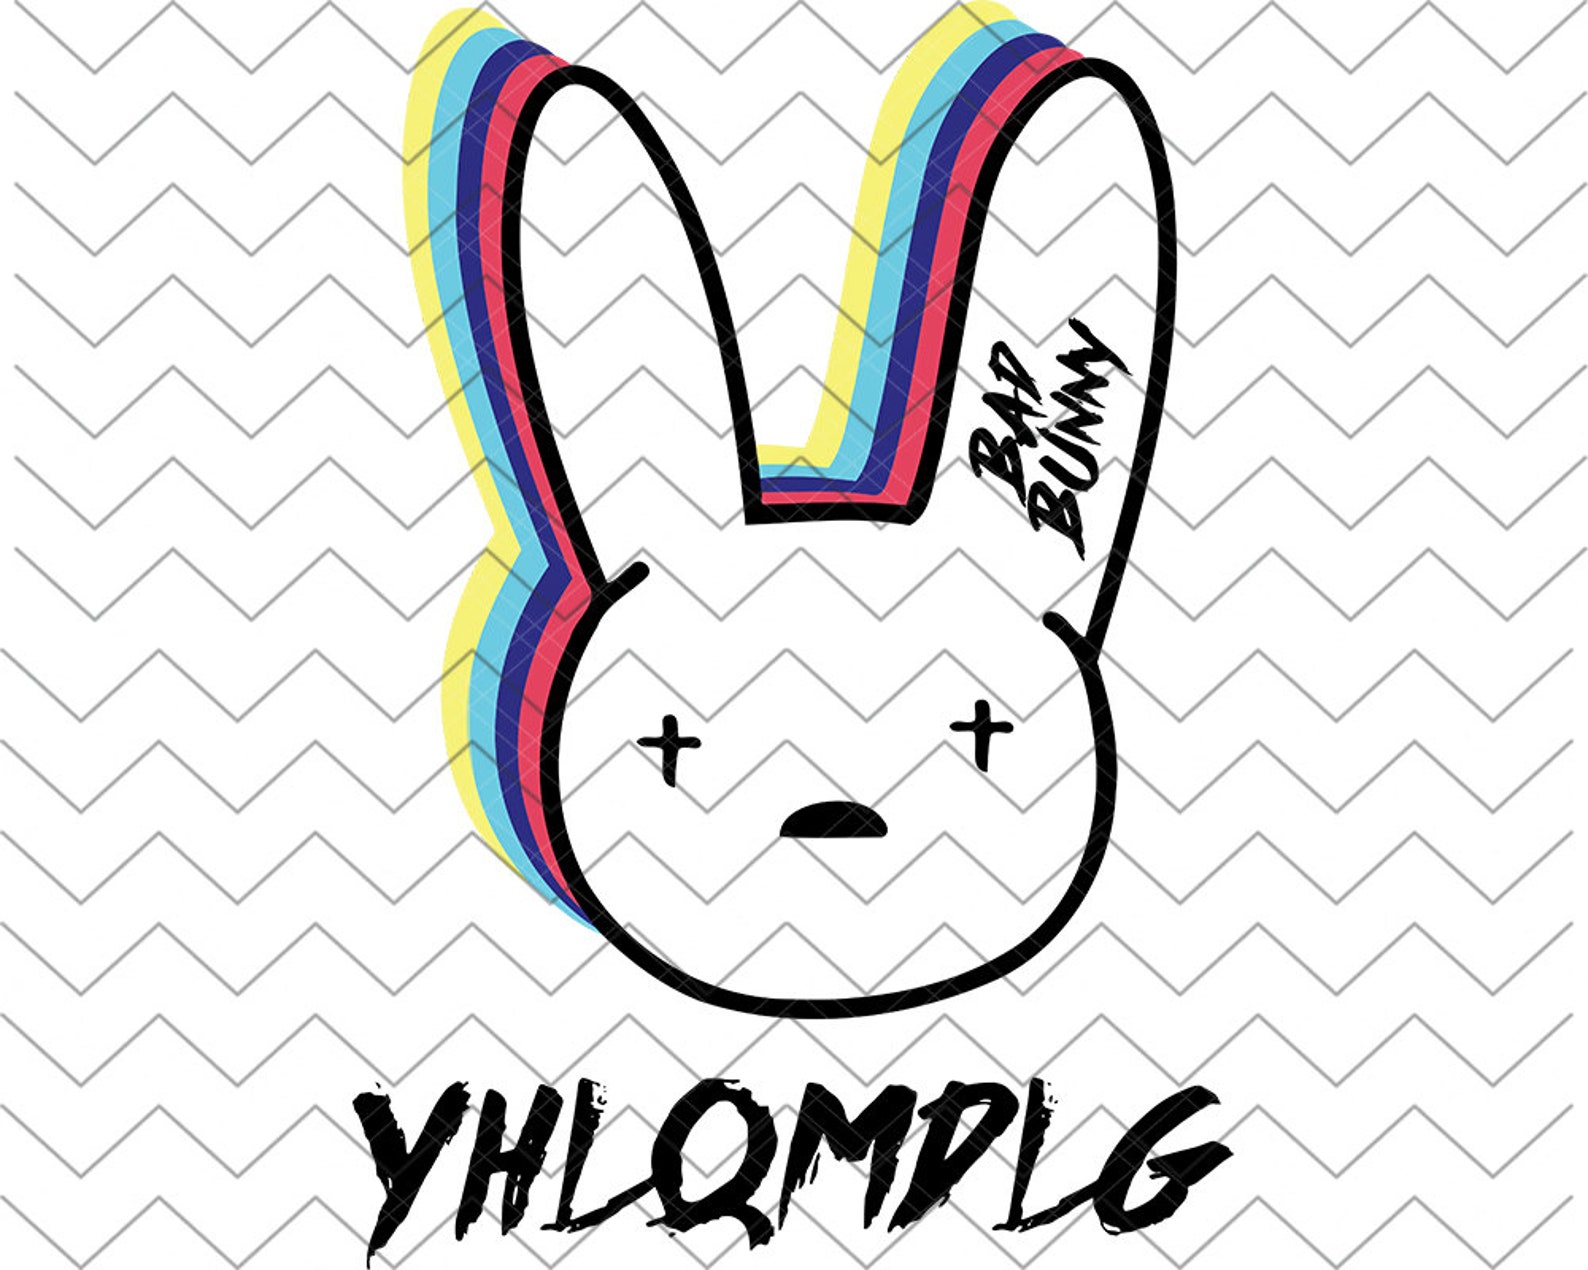 Bad bunny yhlqmdlg logo